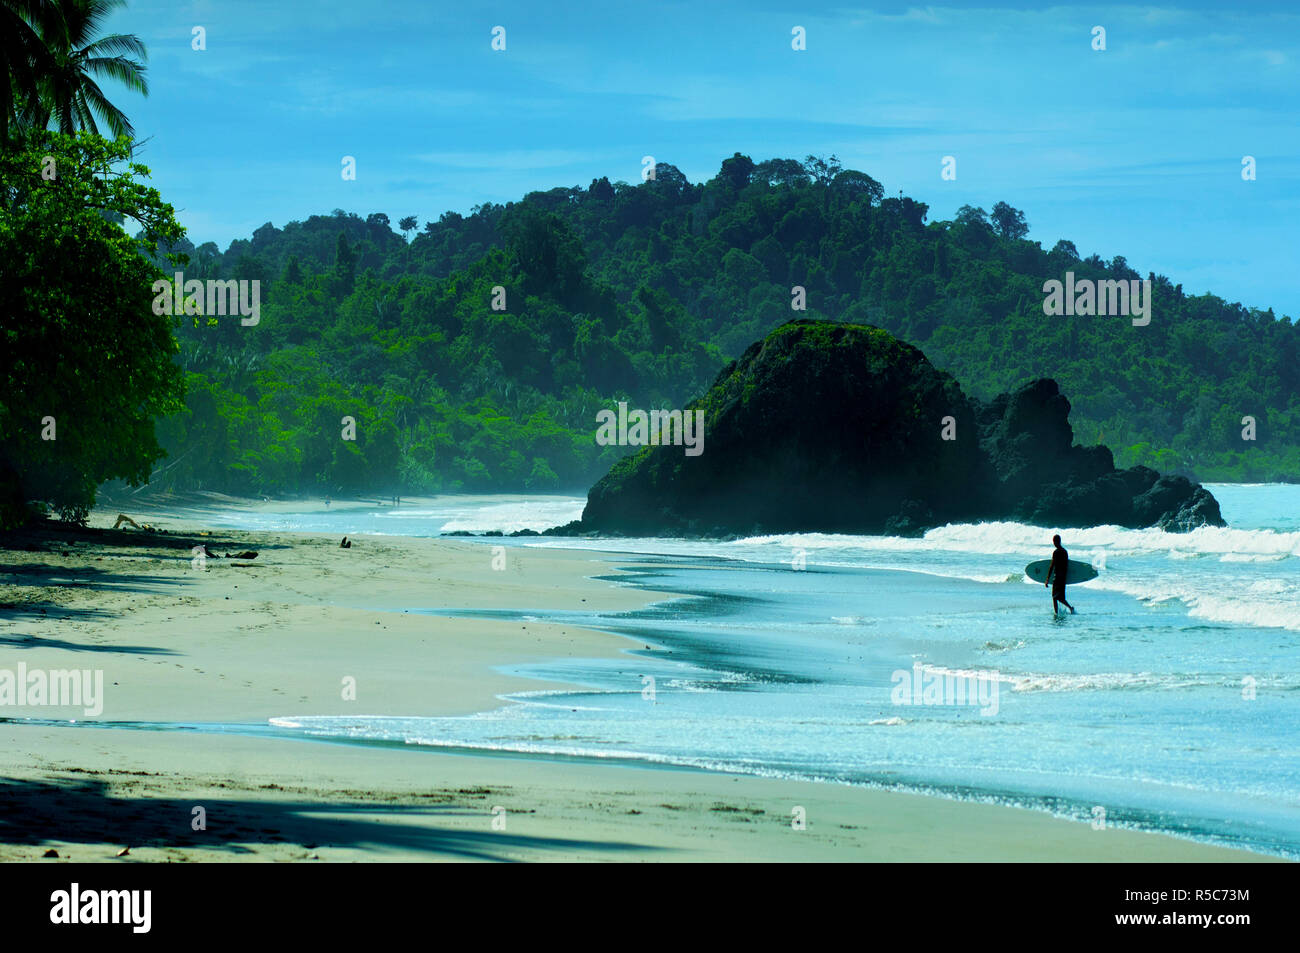 Costa Rica, Quepos, Manuel Antonio, Beach, Rainforest, Pacific Ocean, Surfer Stock Photo